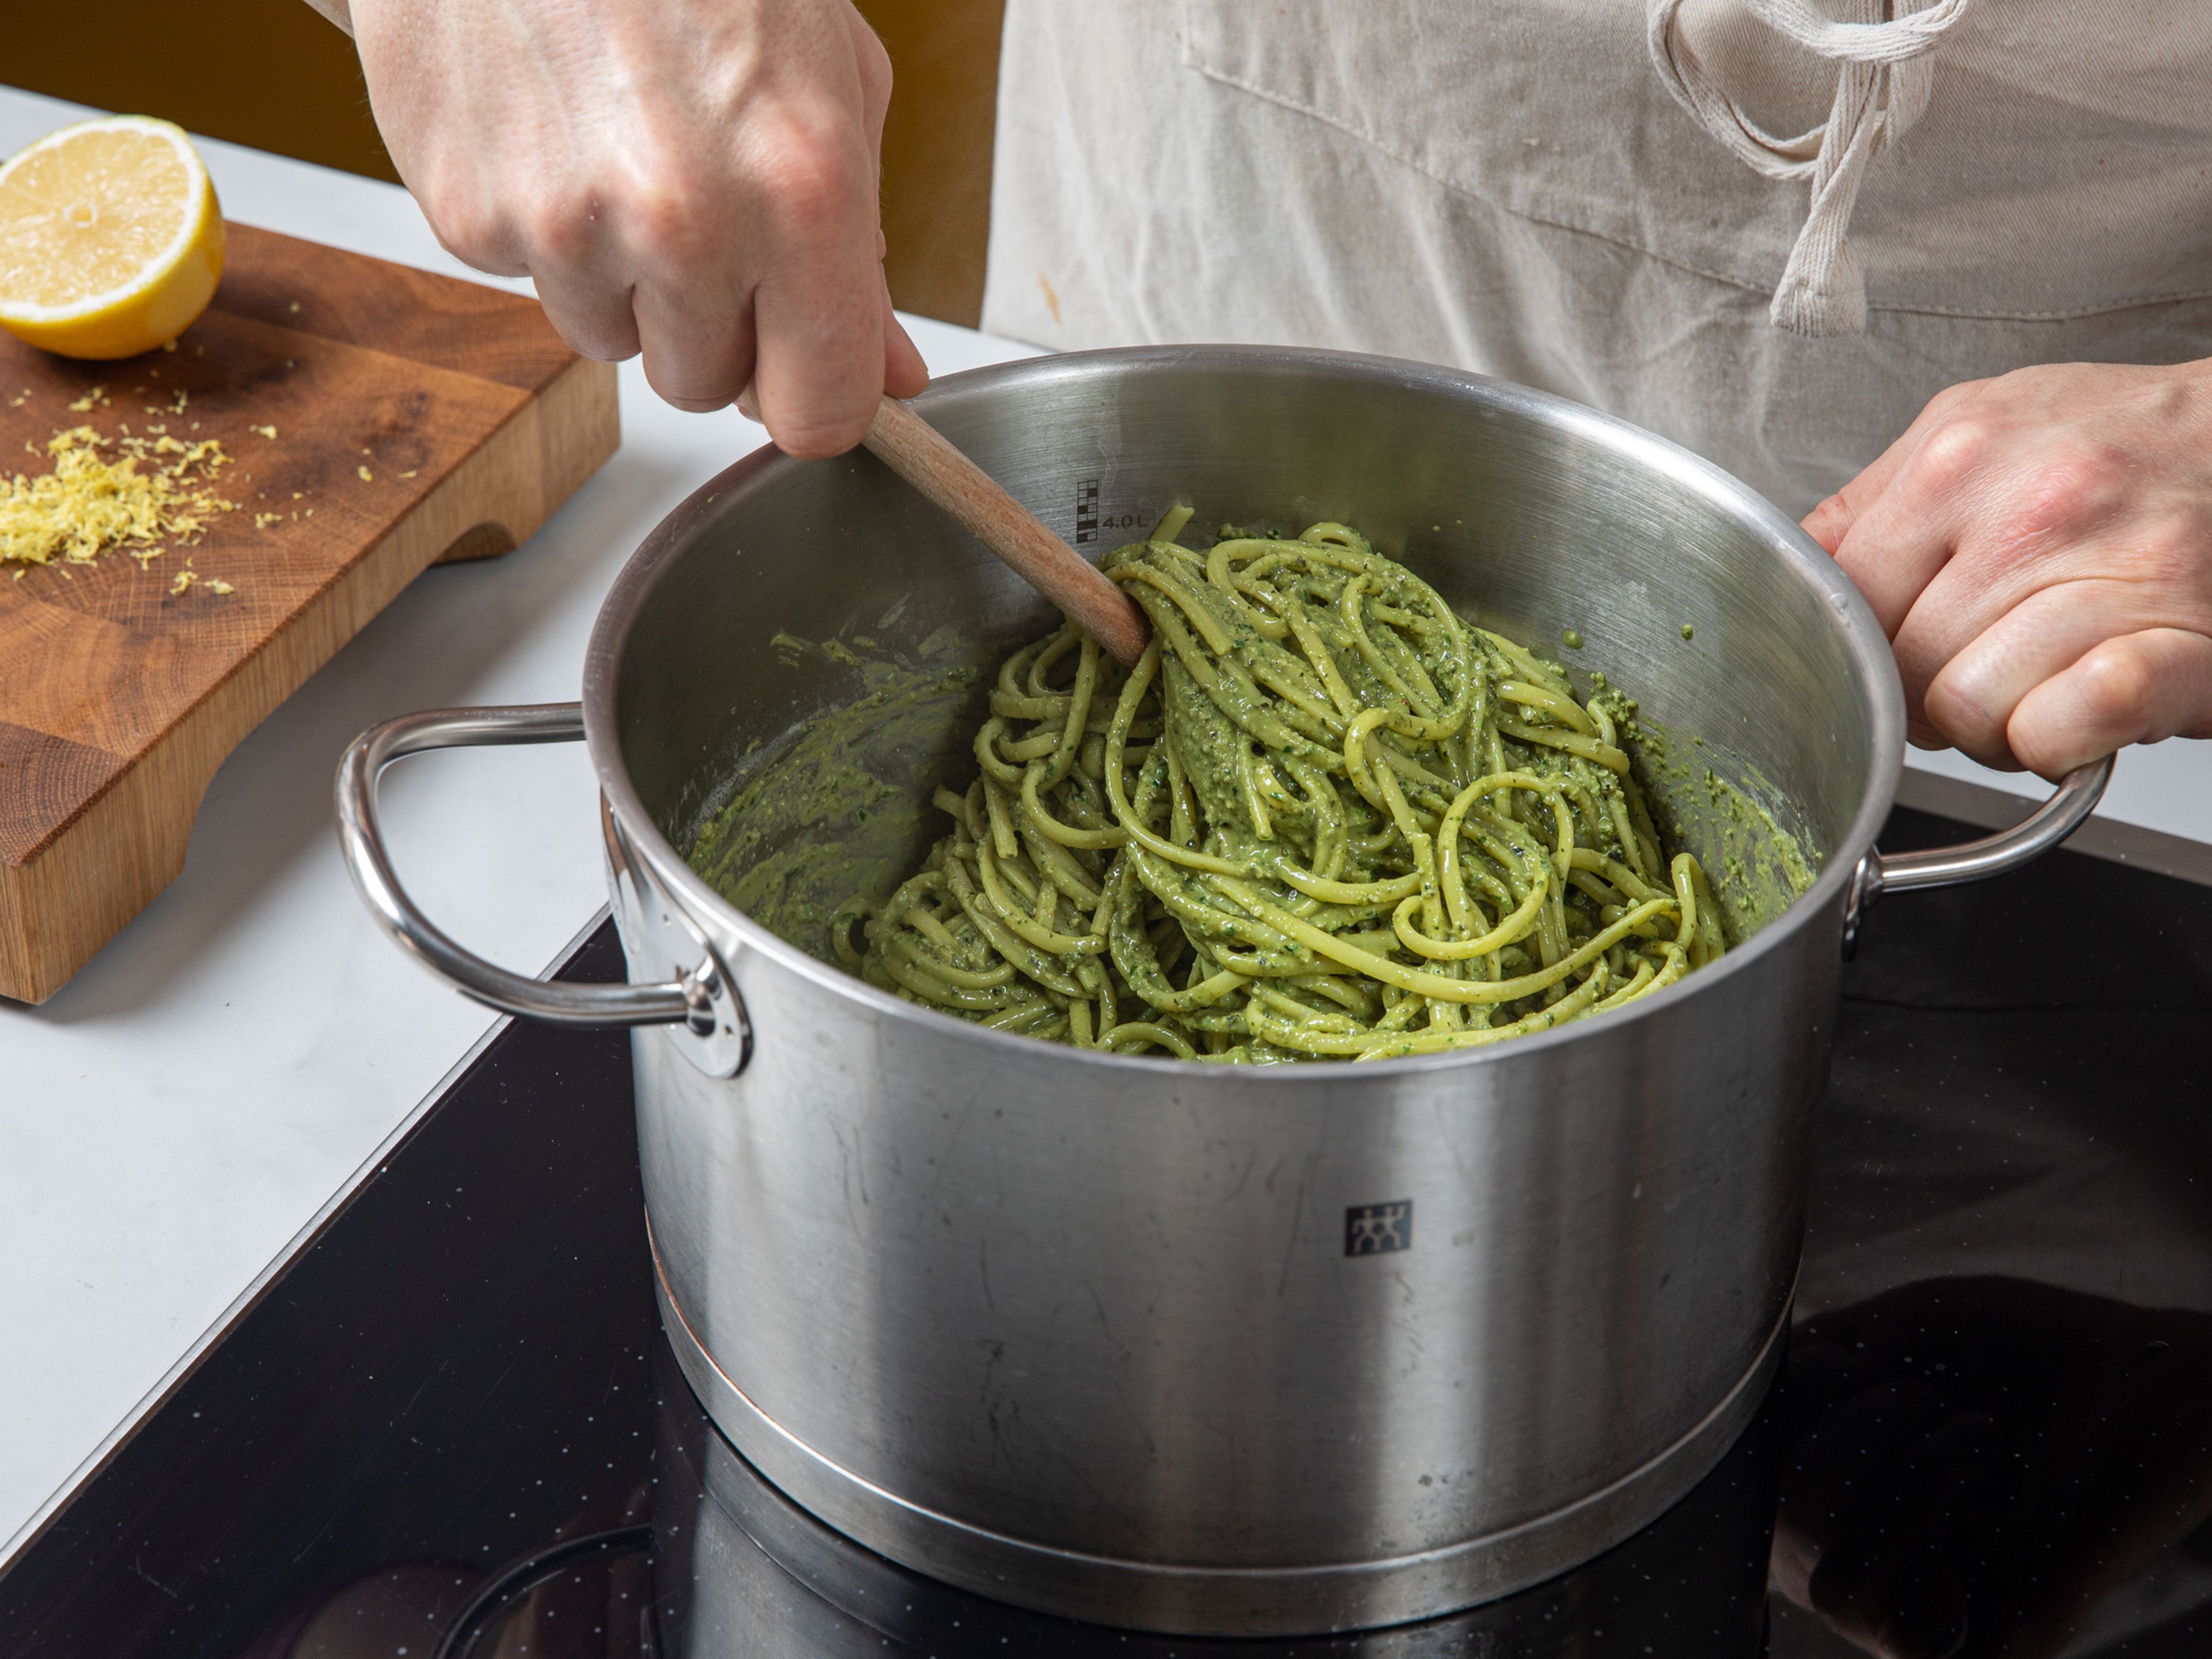 Das Pesto zu den abgetropften Nudeln geben und gut vermengen. Nudelwasser hinzufügen, kurz erhitzen und umrühren. Das Pesto sollte dick und cremig sein. Zusätzlich mit etwas Zitronenschale und Kürbiskernen garnieren. Guten Appetit!